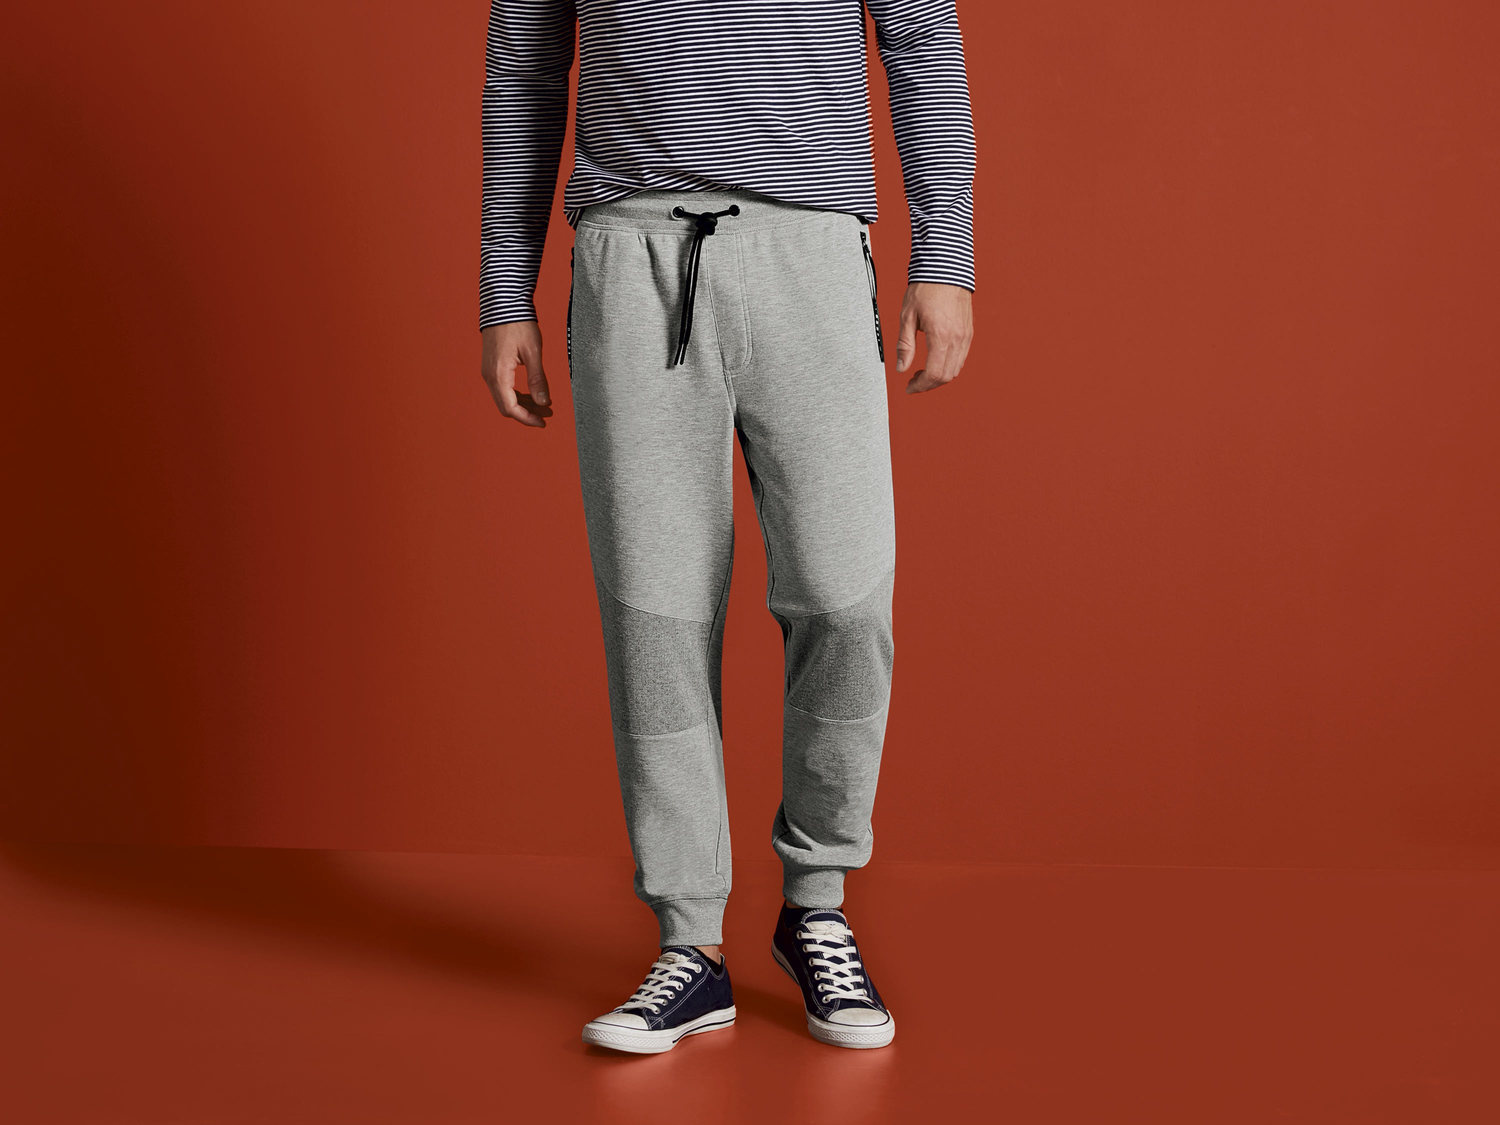 Spodnie dresowe Livergy, cena 34,99 PLN 
- wysoka zawartość bawełny
- rozmiary: ...